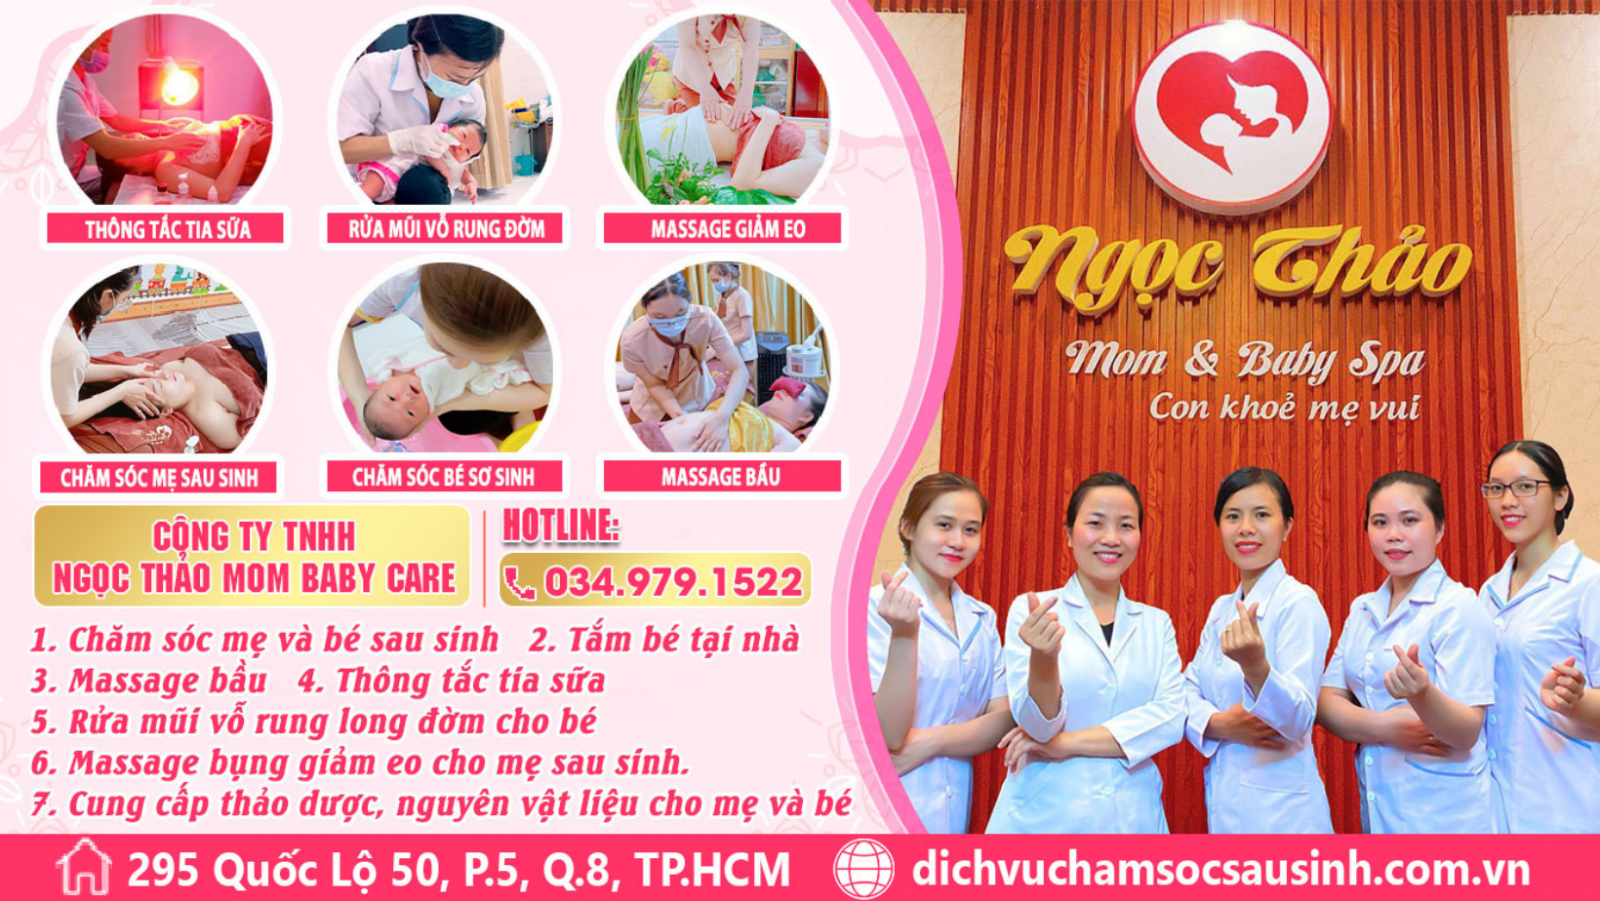 Công ty TNHH Ngọc Thảo Mom Baby Care, trung tâm đào tạo nghề chăm sóc mẹ và bé